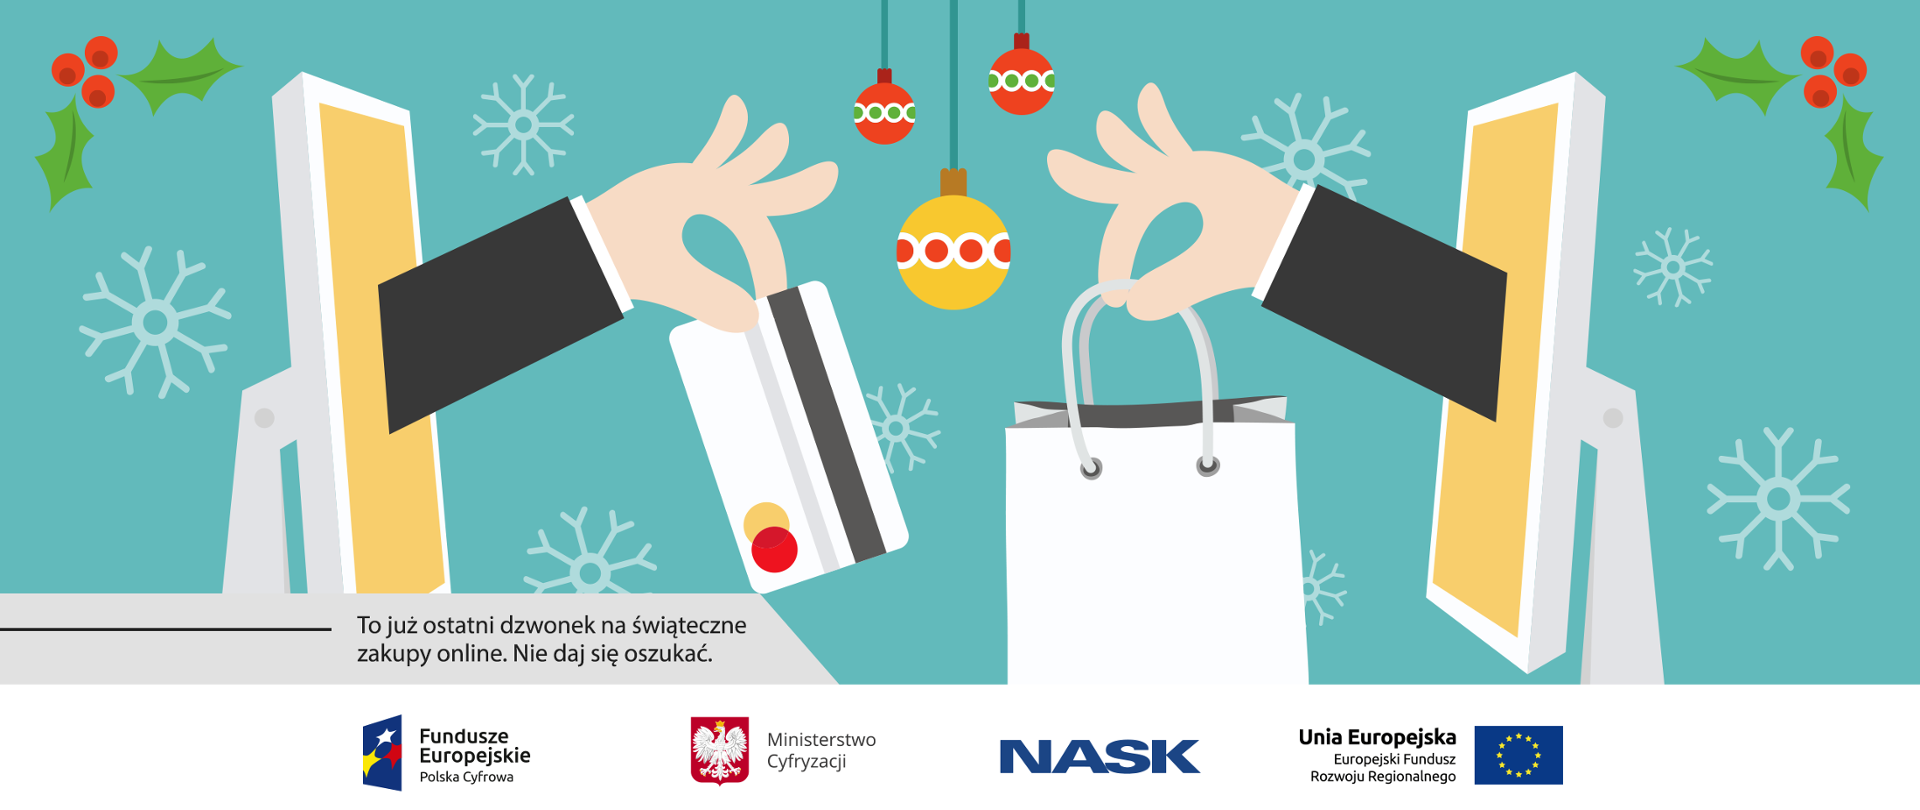 Grafika przedstawia dwie ręce wychodzące z ekranów komputera. Jedna z nich trzyma kartę płatniczą, druga torebkę papierową torbę z prezentem. W tle ozdoby świąteczne między innymi śnieżynki i bombki.